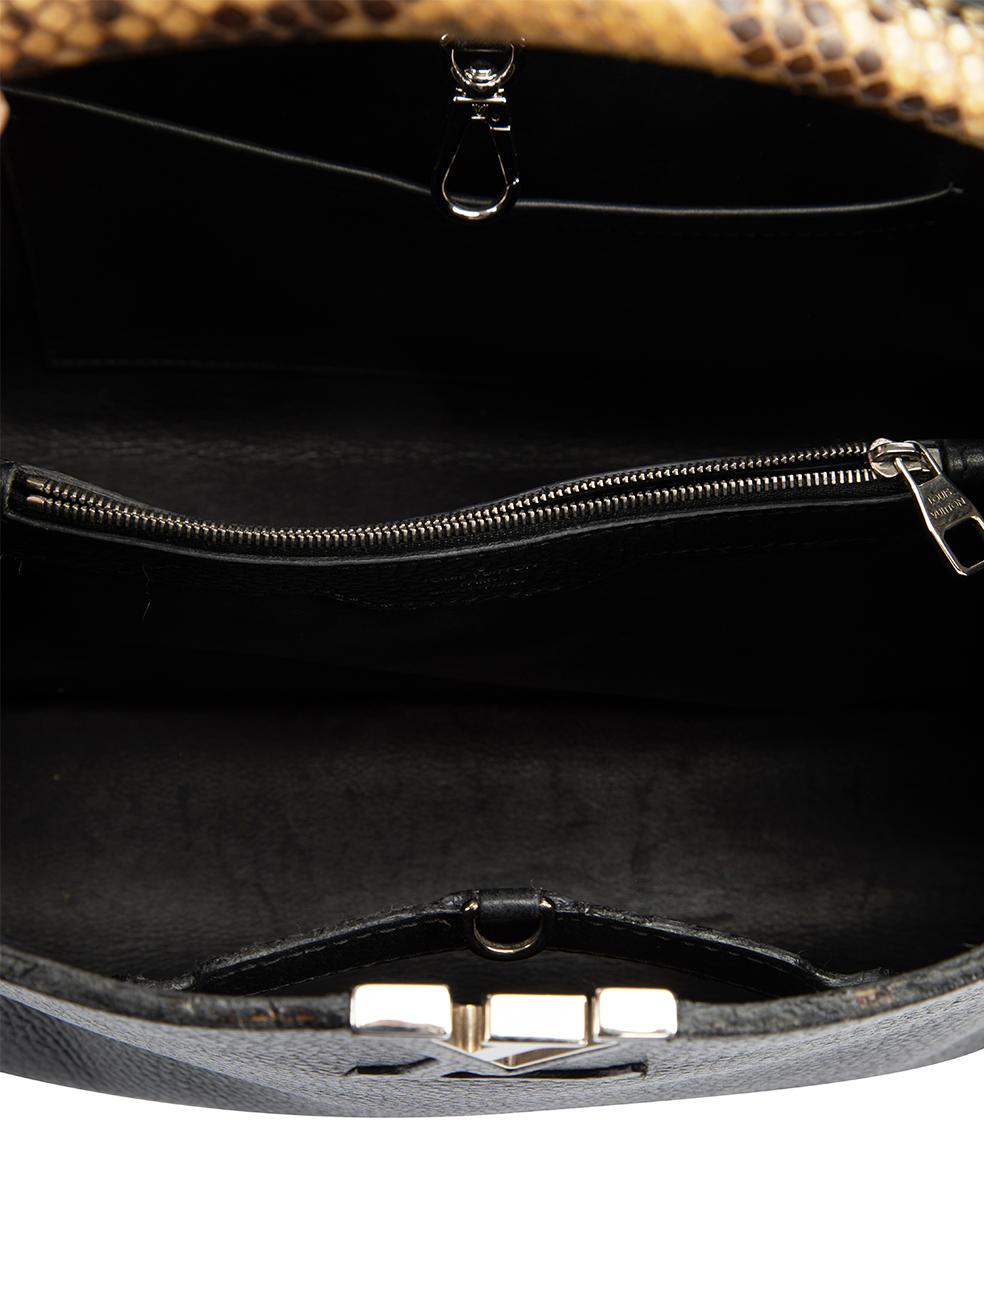 Pre-Loved Louis Vuitton Women's Black 2014 Python Handle Capucines MM Bag 2